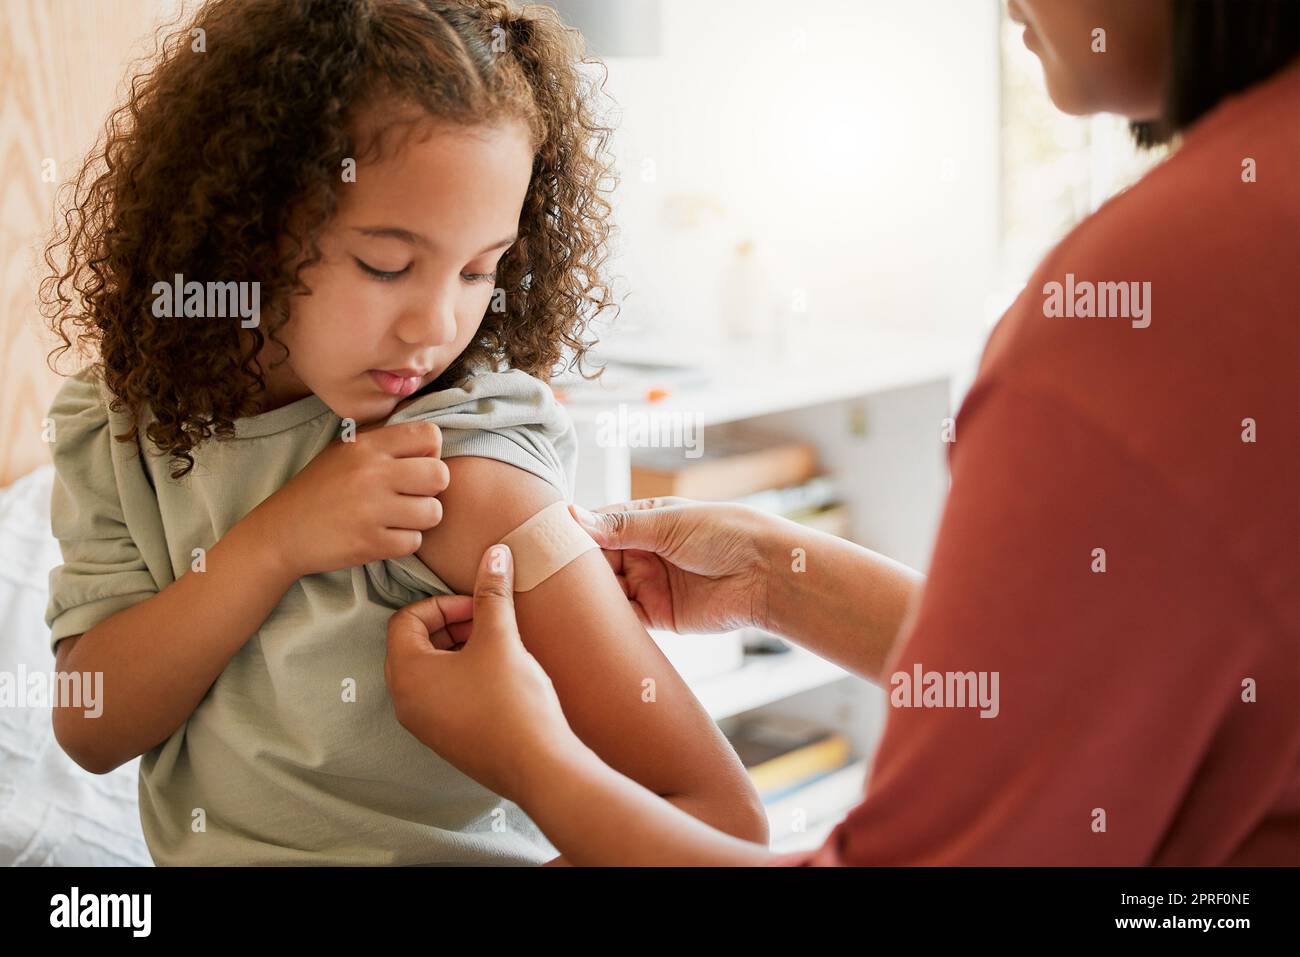 Covid infirmière vaccinant l'enfant mettant un bandage sur une clinique. Médecin appliquant du plâtre sur une fille après une injection au centre de santé. Pédiatrie, immunité et prévention à l'hôpital médical pour enfants Banque D'Images